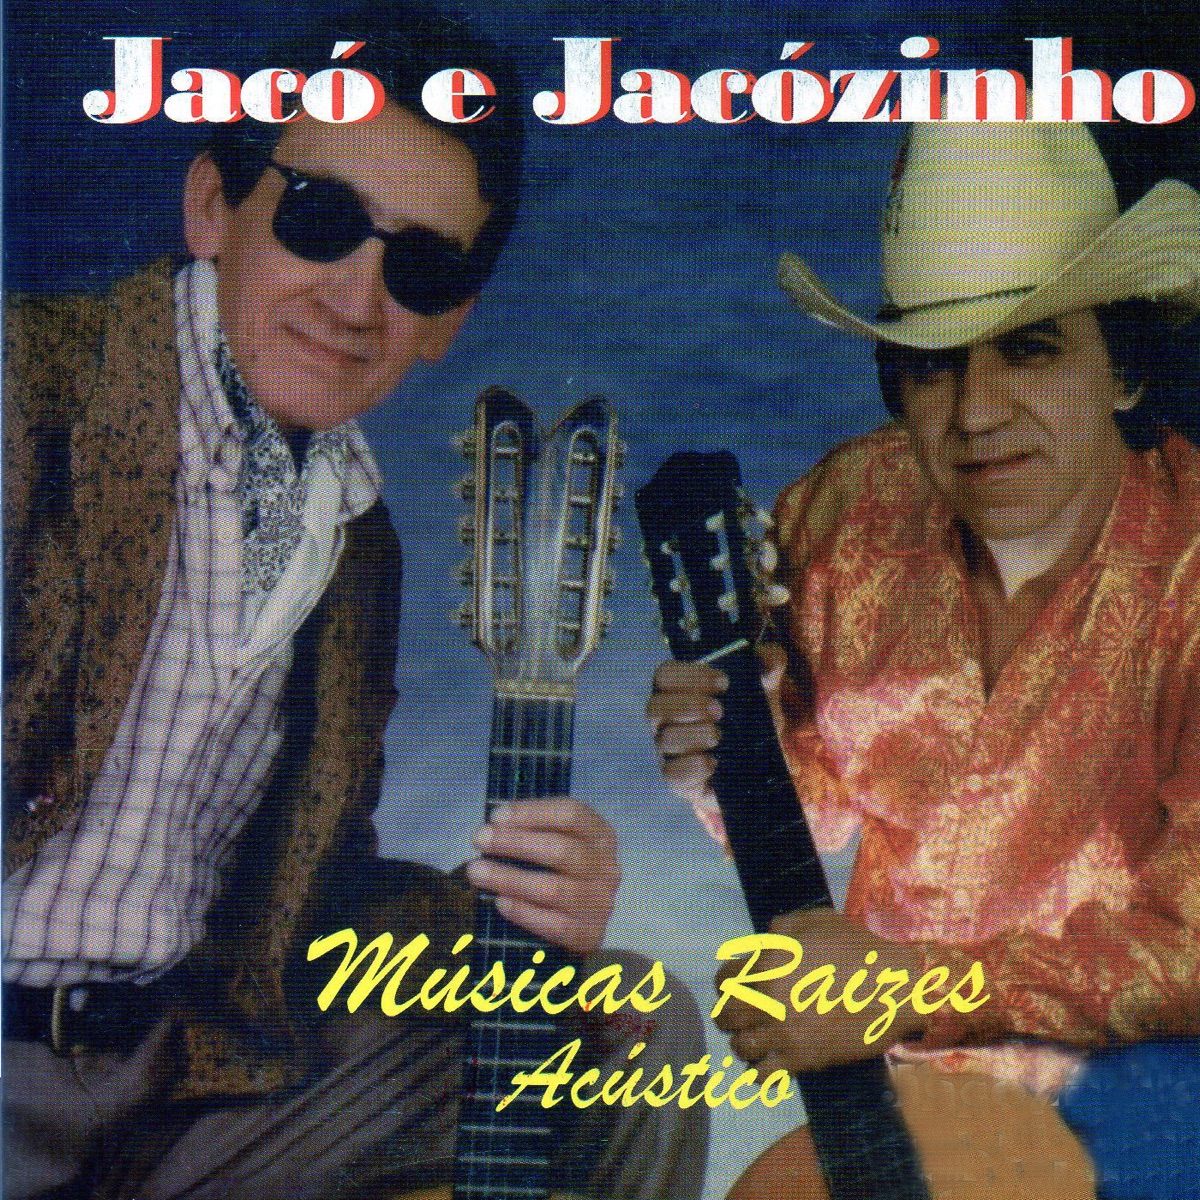 O Peão e o Ricaço — música de Jacó & Jacozinho — Apple Music